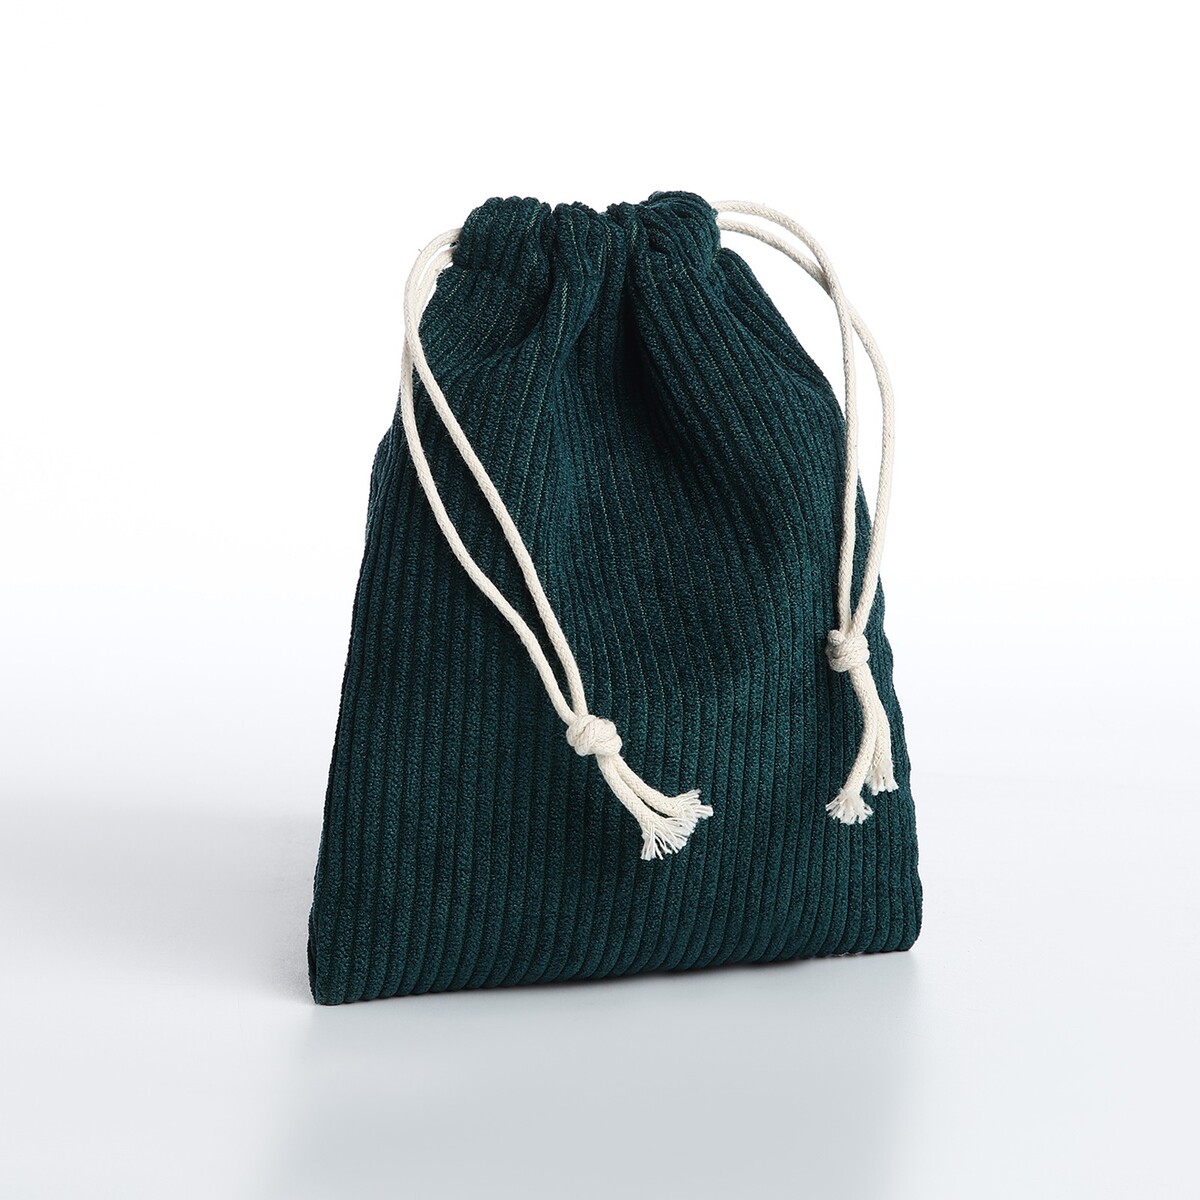 Косметичка - мешок с завязками, цвет зеленый сумка мешок на молнии зеленый